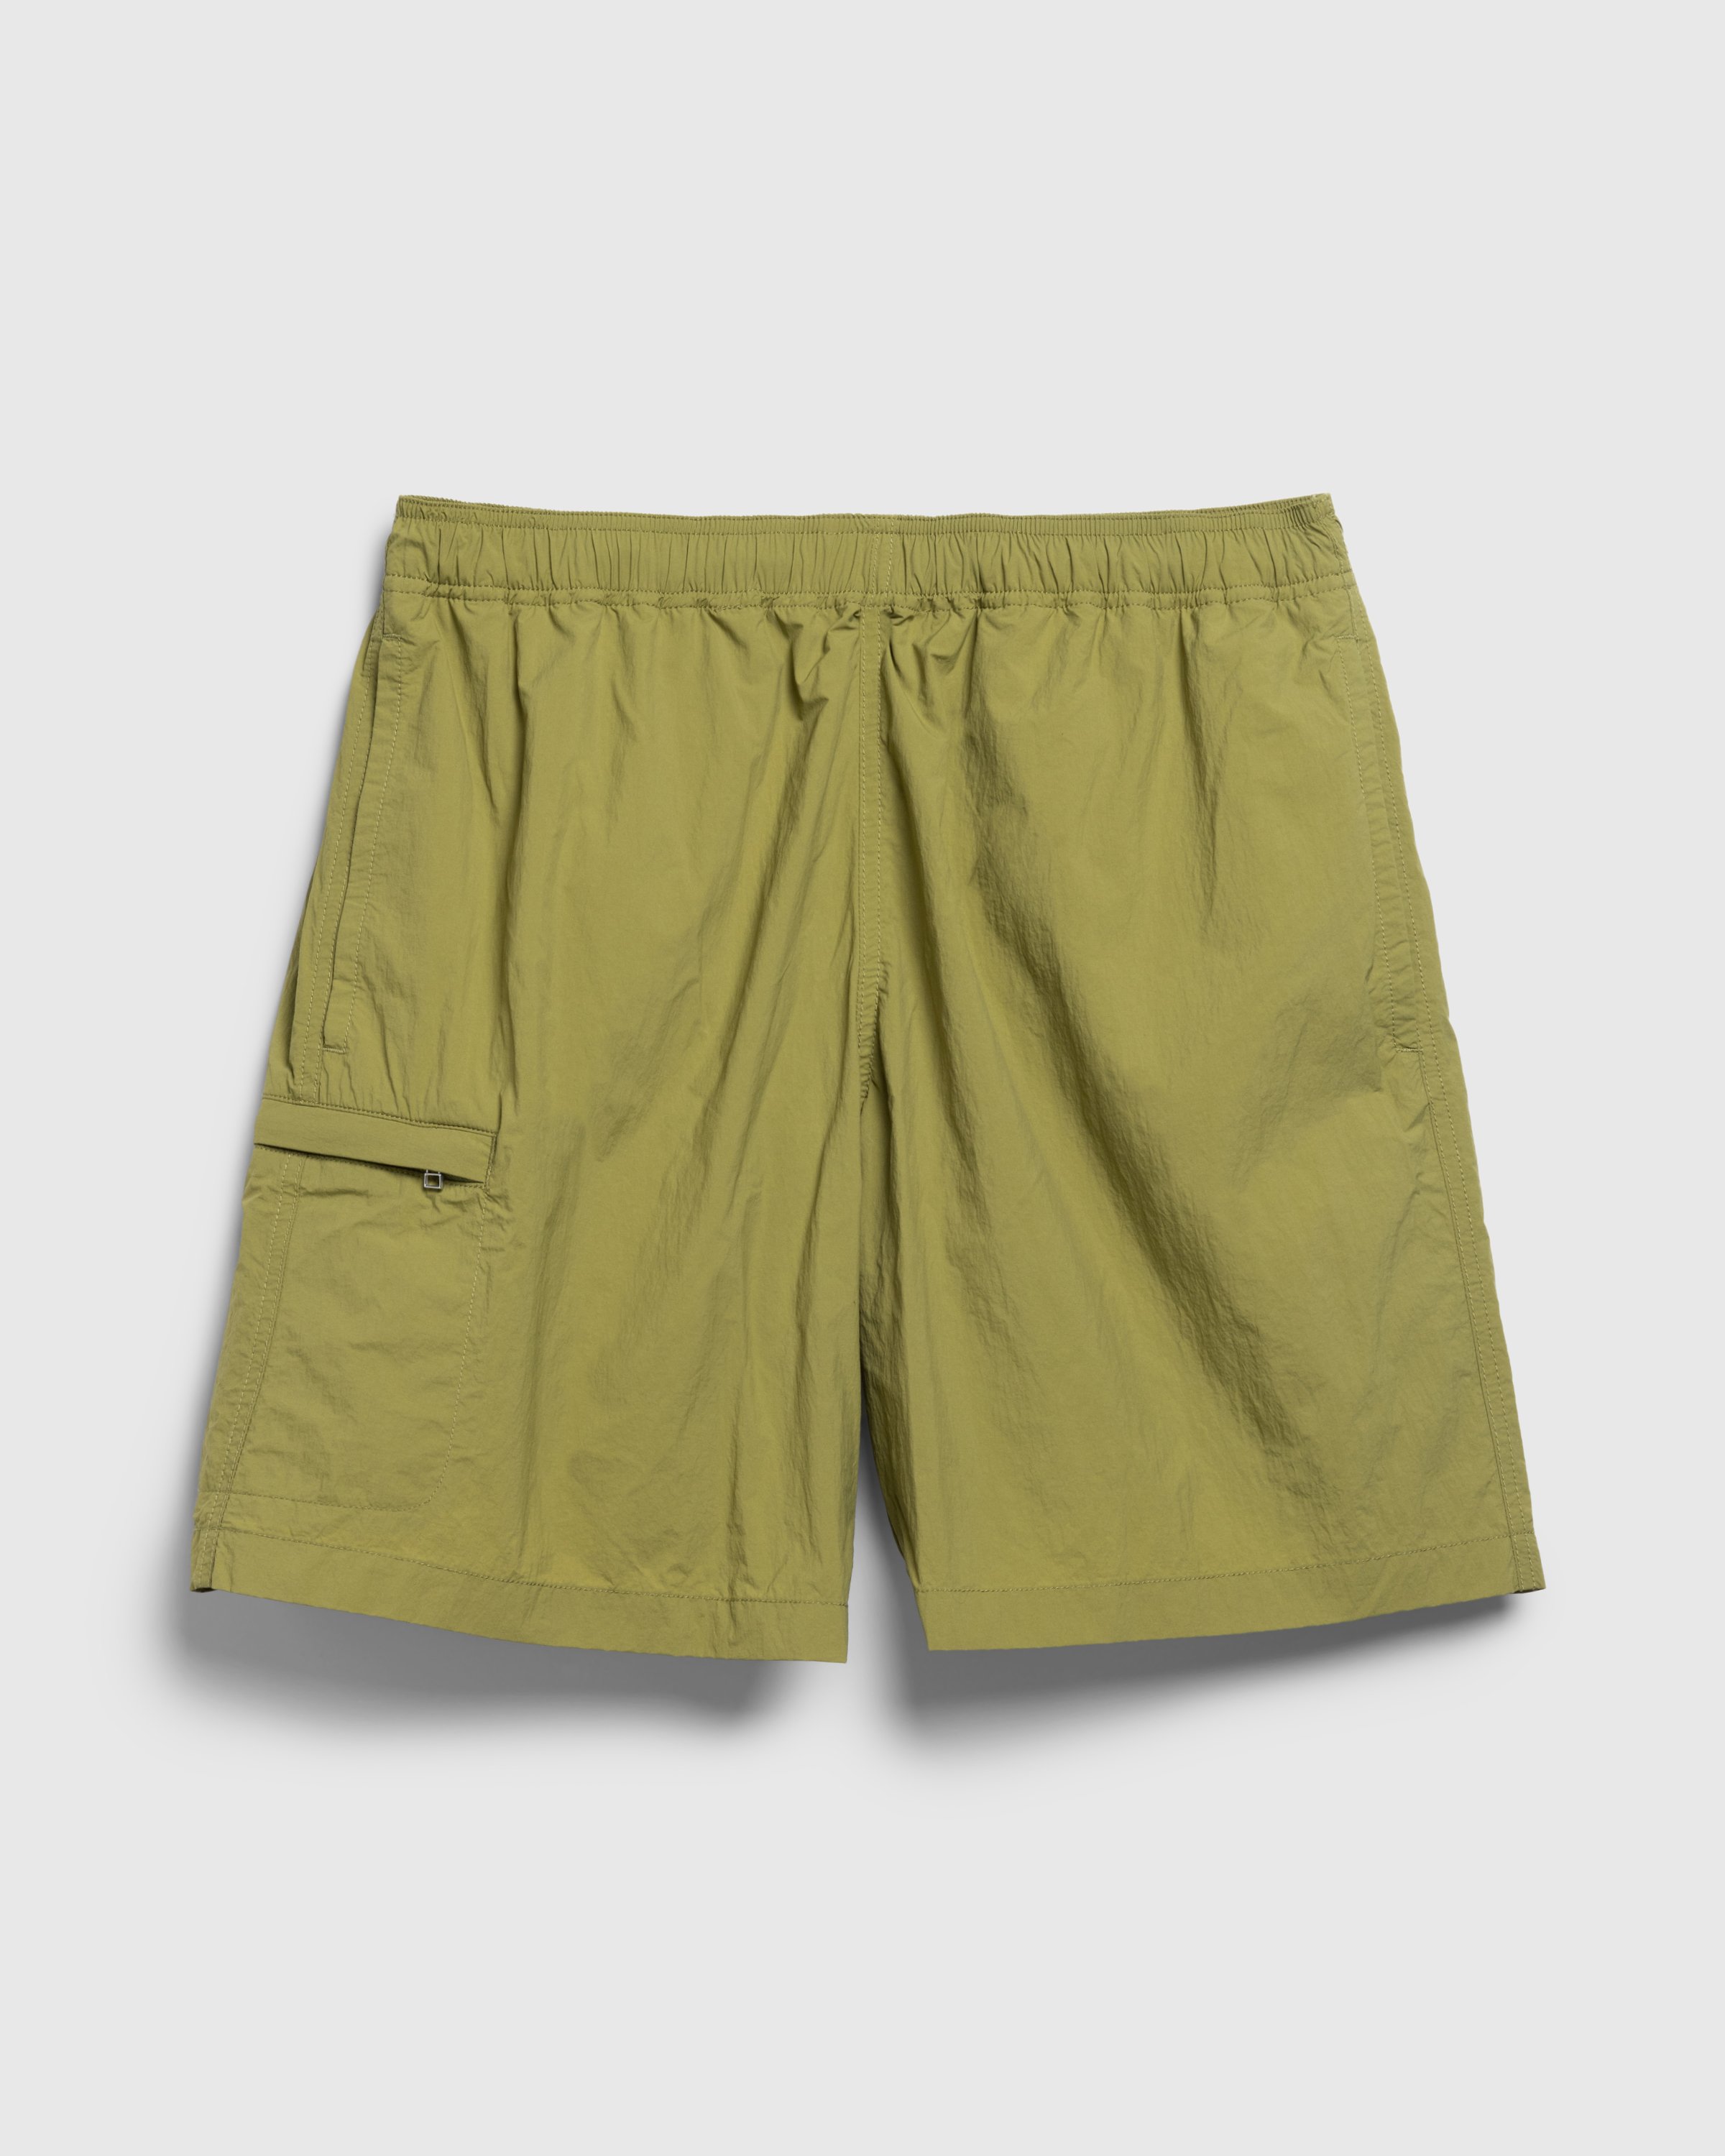 Highsnobiety HS05 - Natural Dyed Nylon Shorts - Clothing - Khaki - Image 1